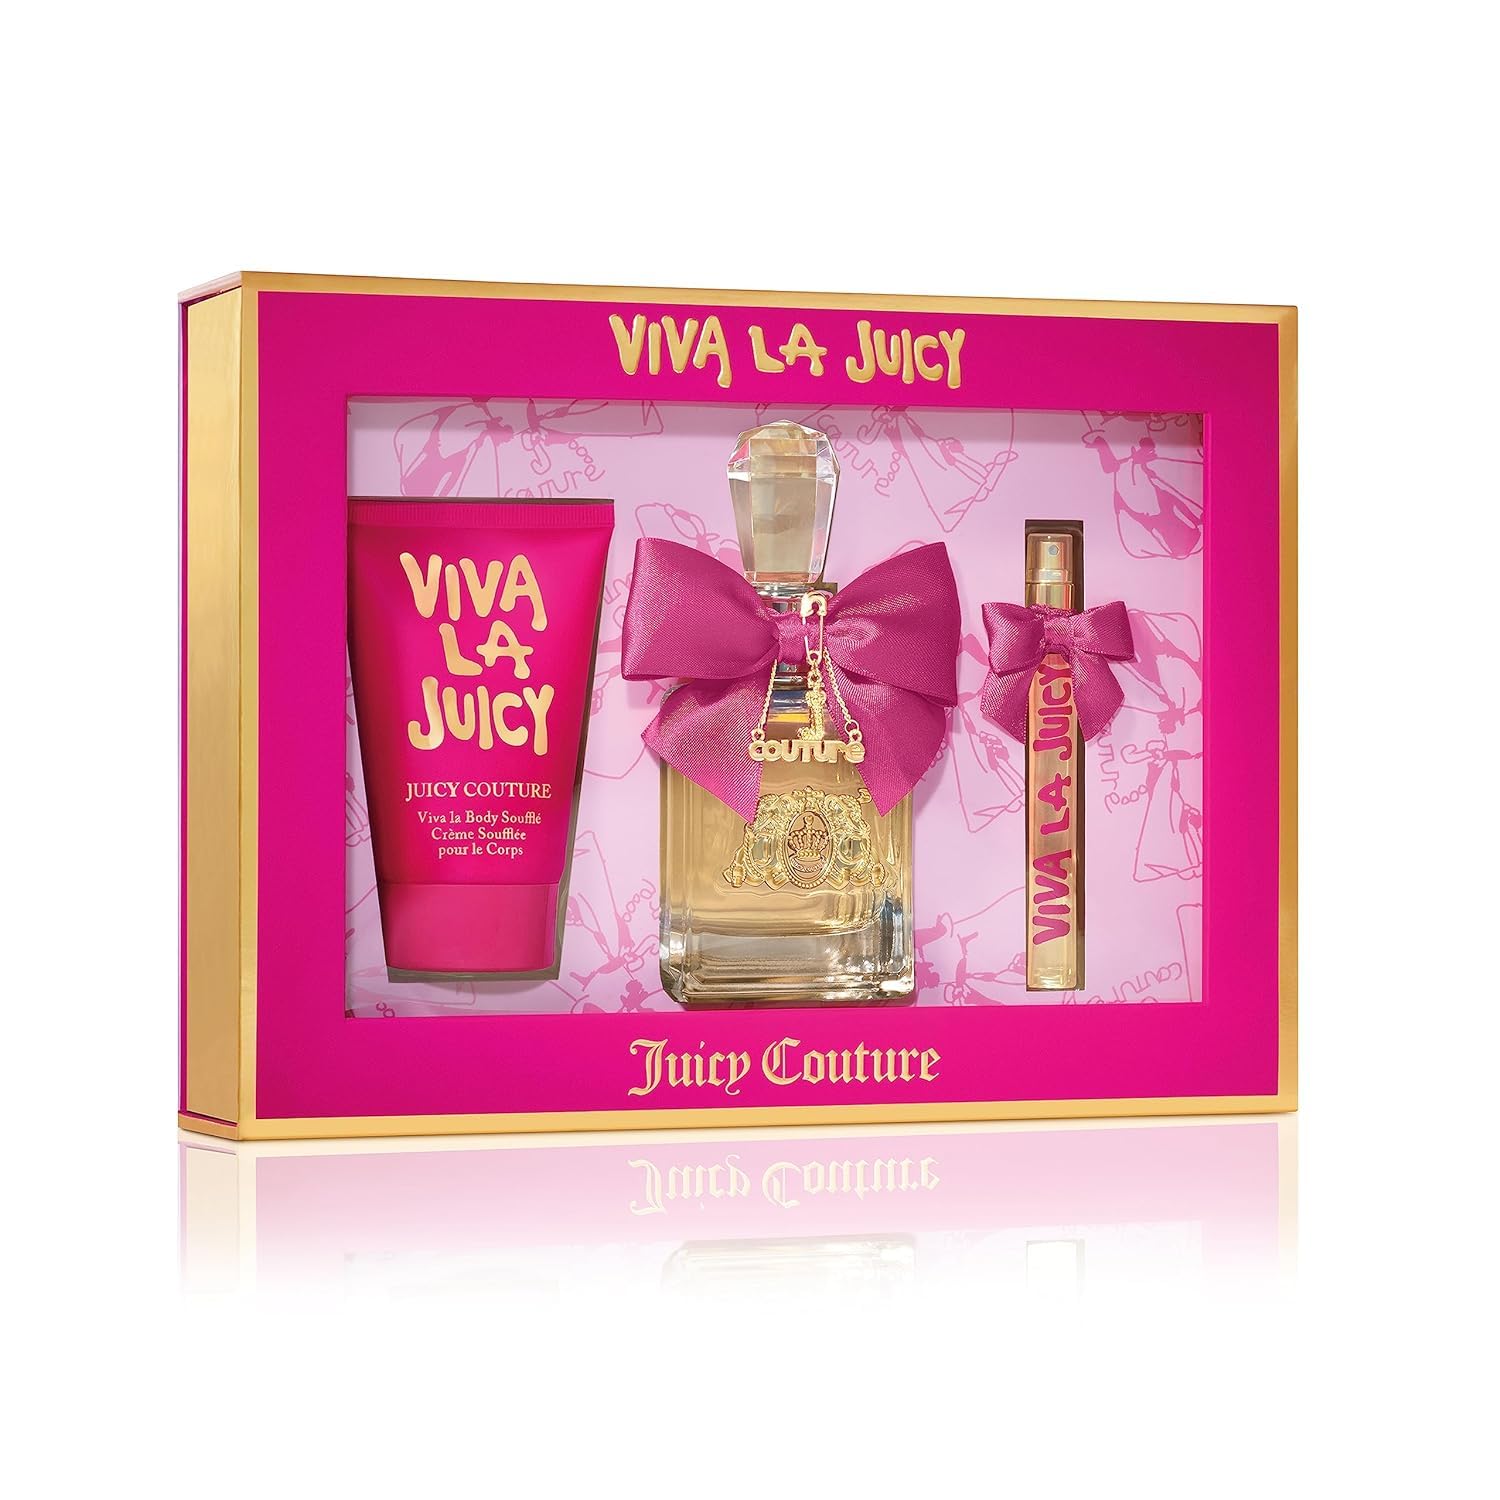 Juicy Couture,3 Piece Fragrance Set Viva La Juicy Eau De Parfum,Women's Perfume Set Includes - 3.4 Eau de Parfum- 4.2 Body lotion- 10ML Eau de Parfum SPRAY-women fragrances